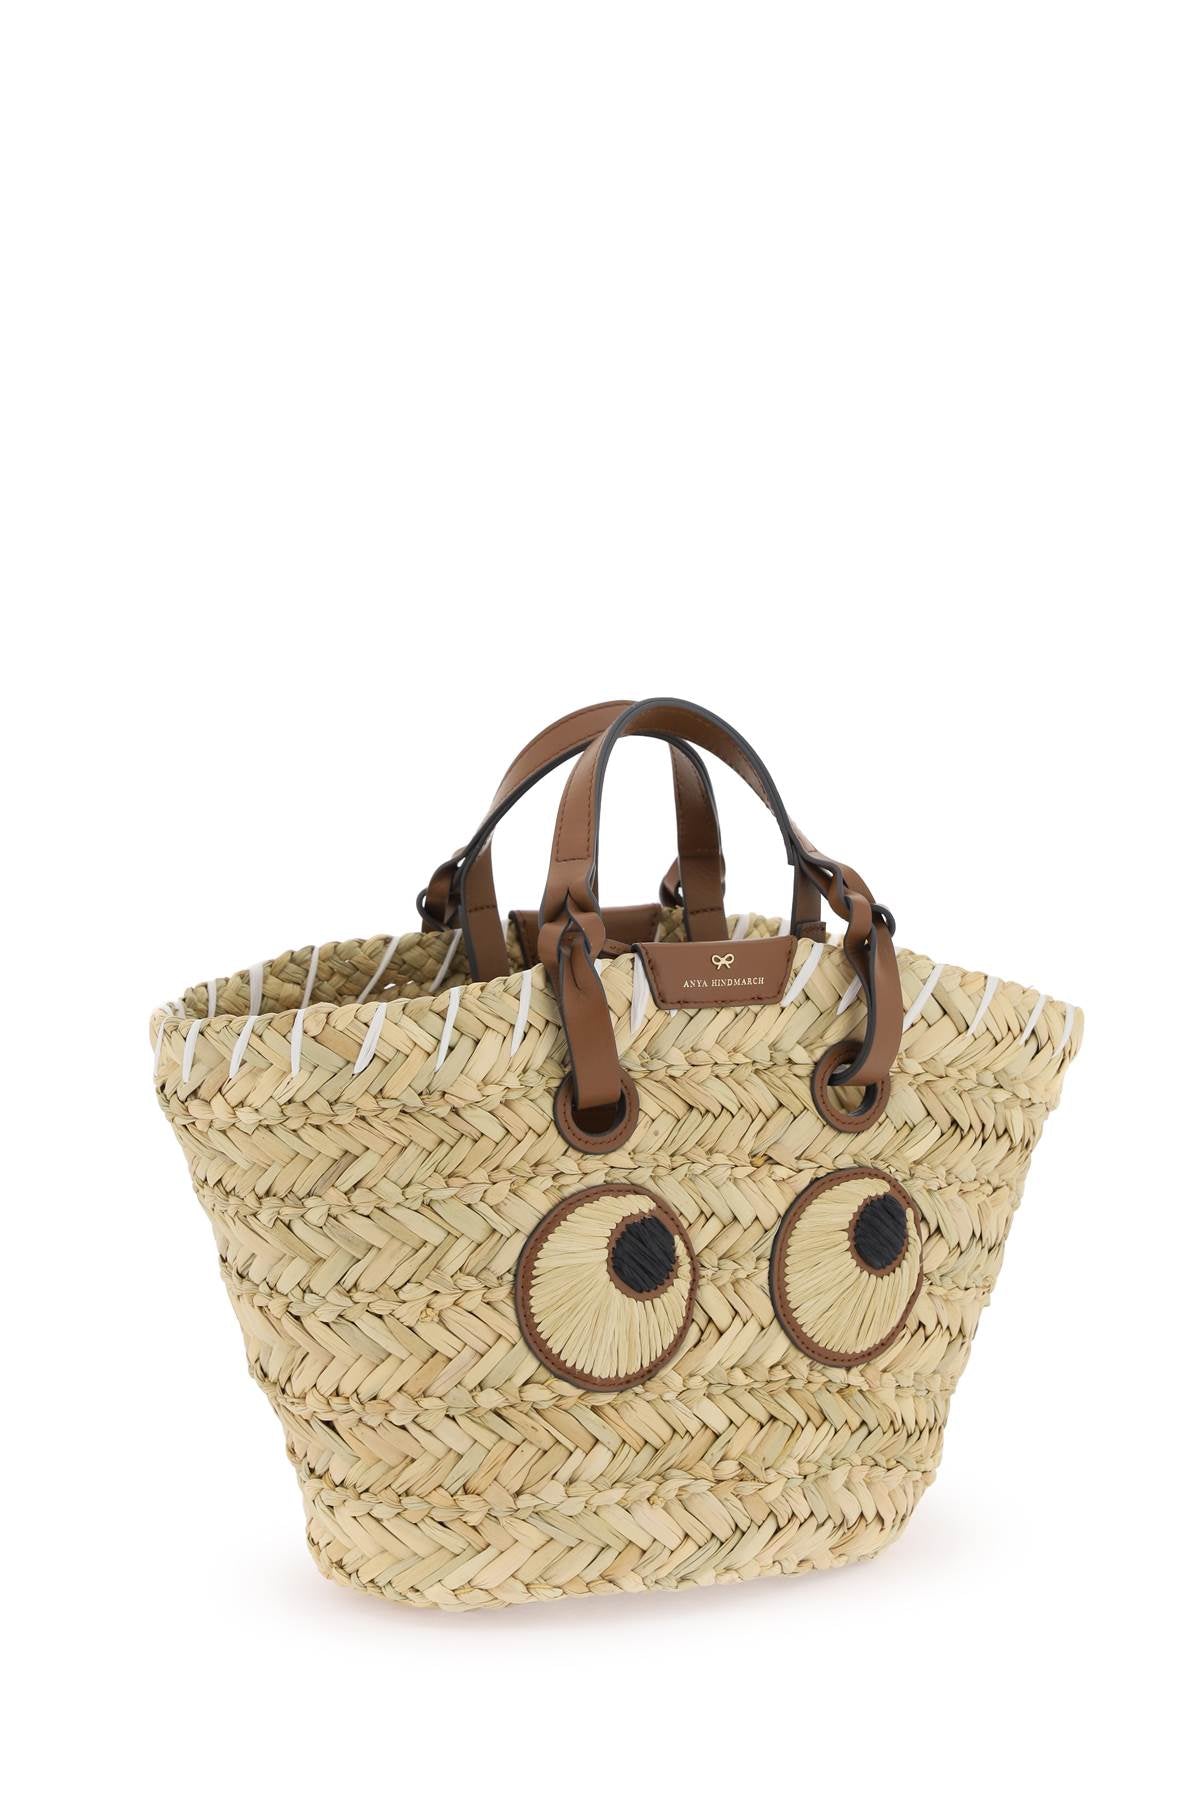 Anya hindmarch paper eyes basket handbag-2